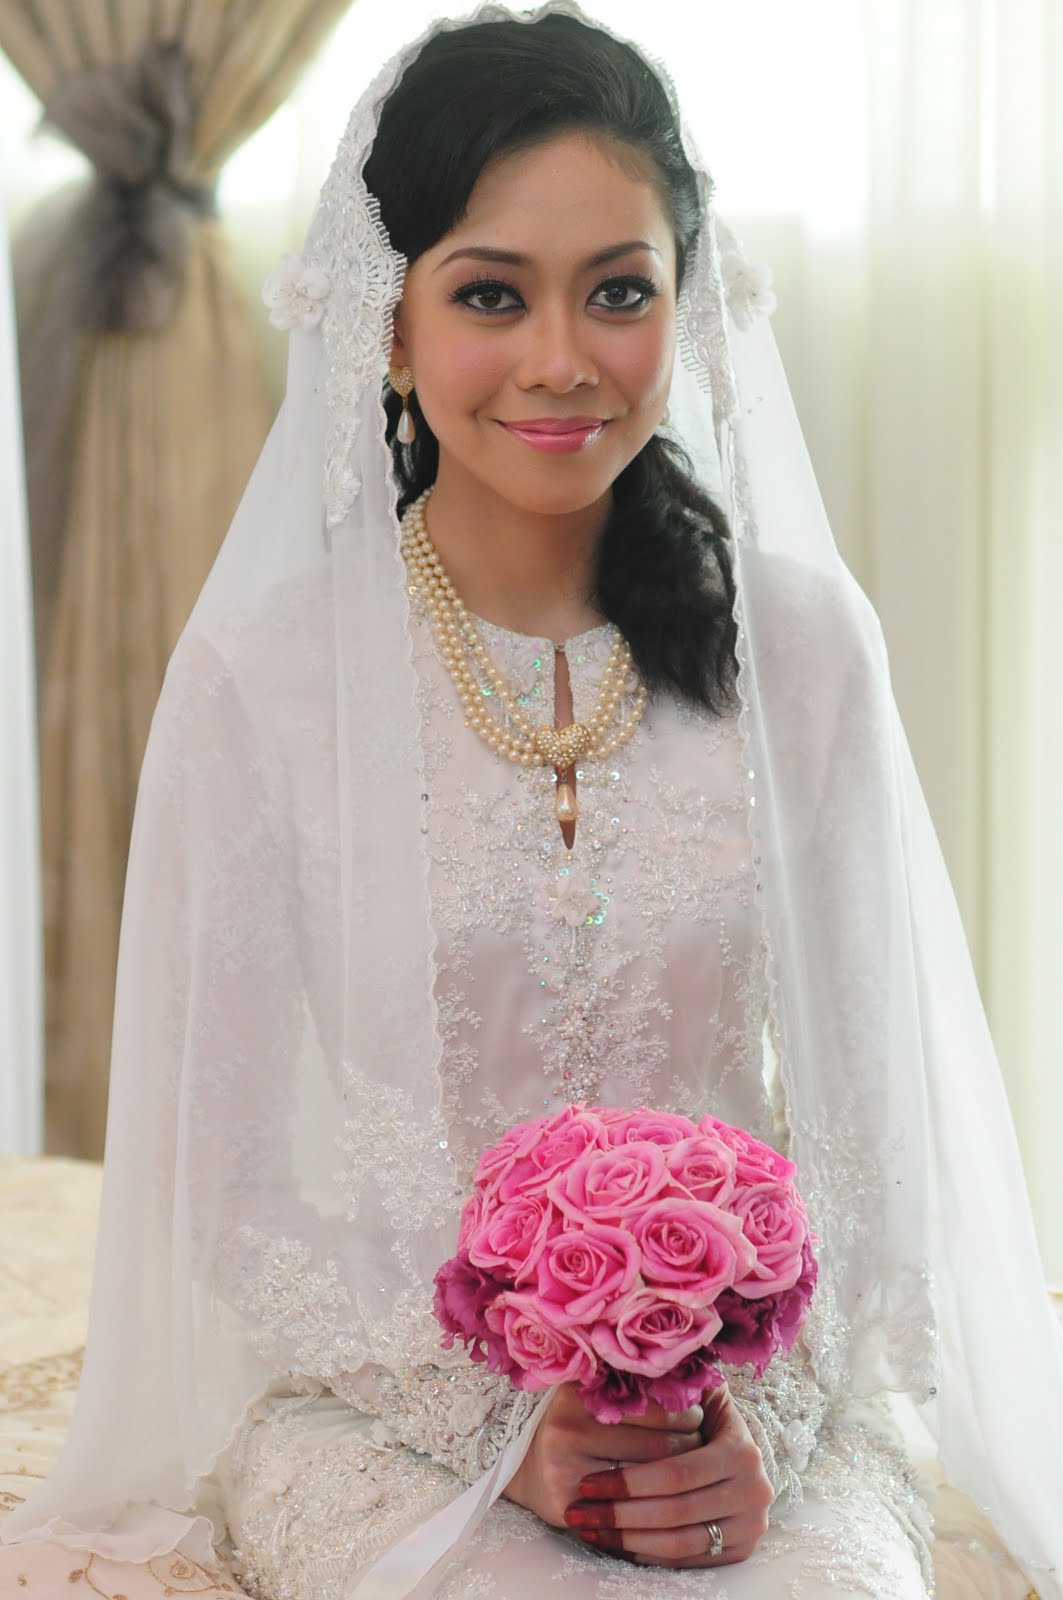 qudyn Zaza s wedding dress for nikah  and reception ceremony